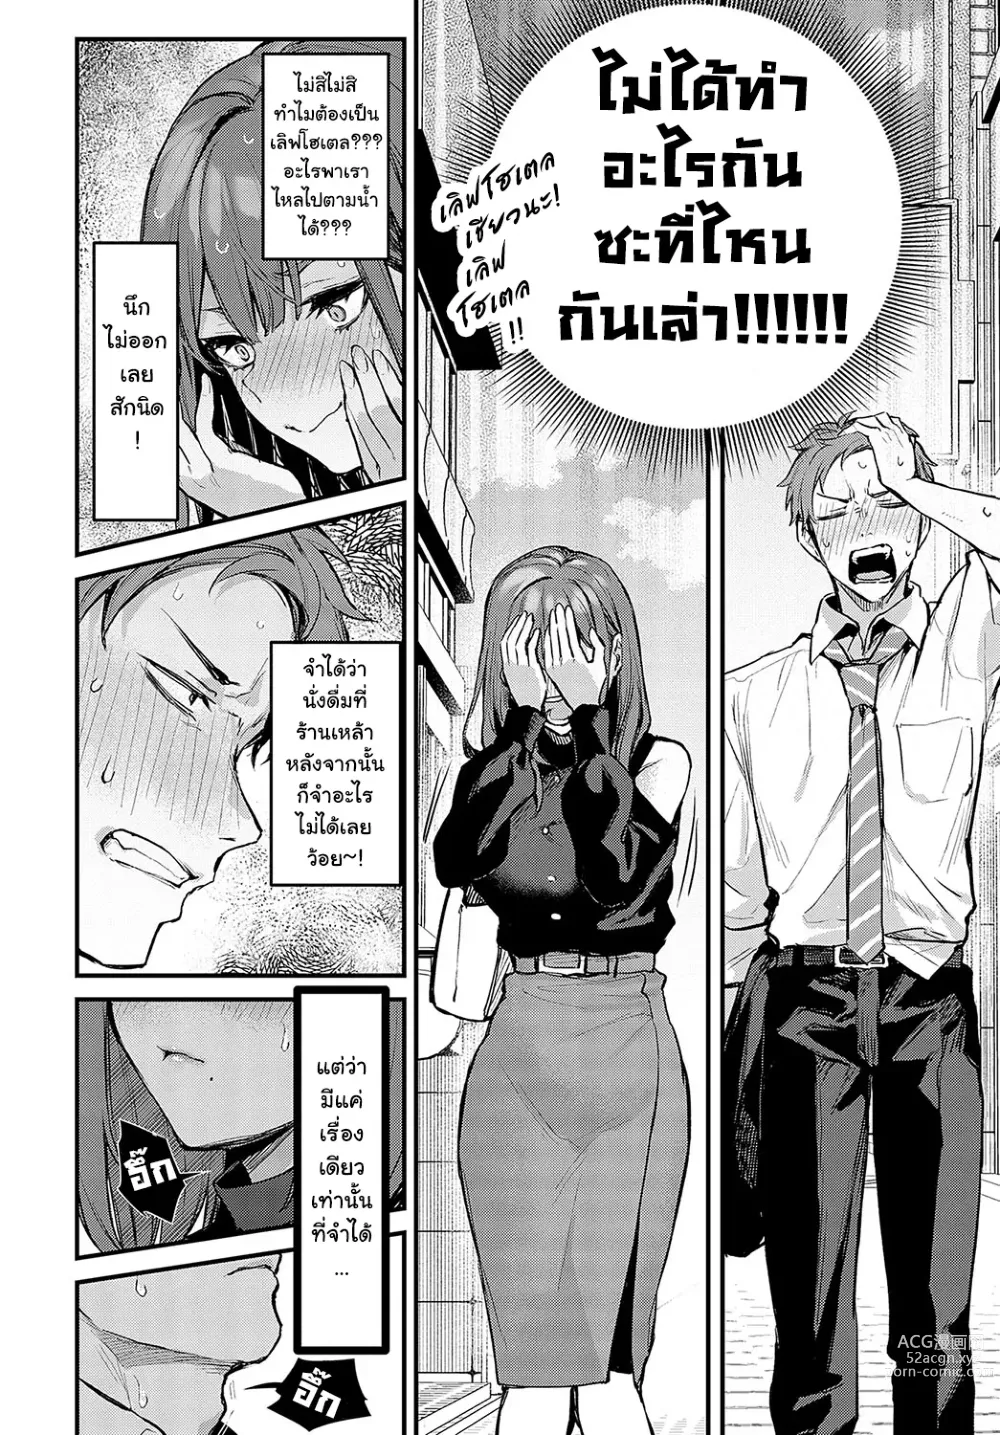 Page 7 of manga 